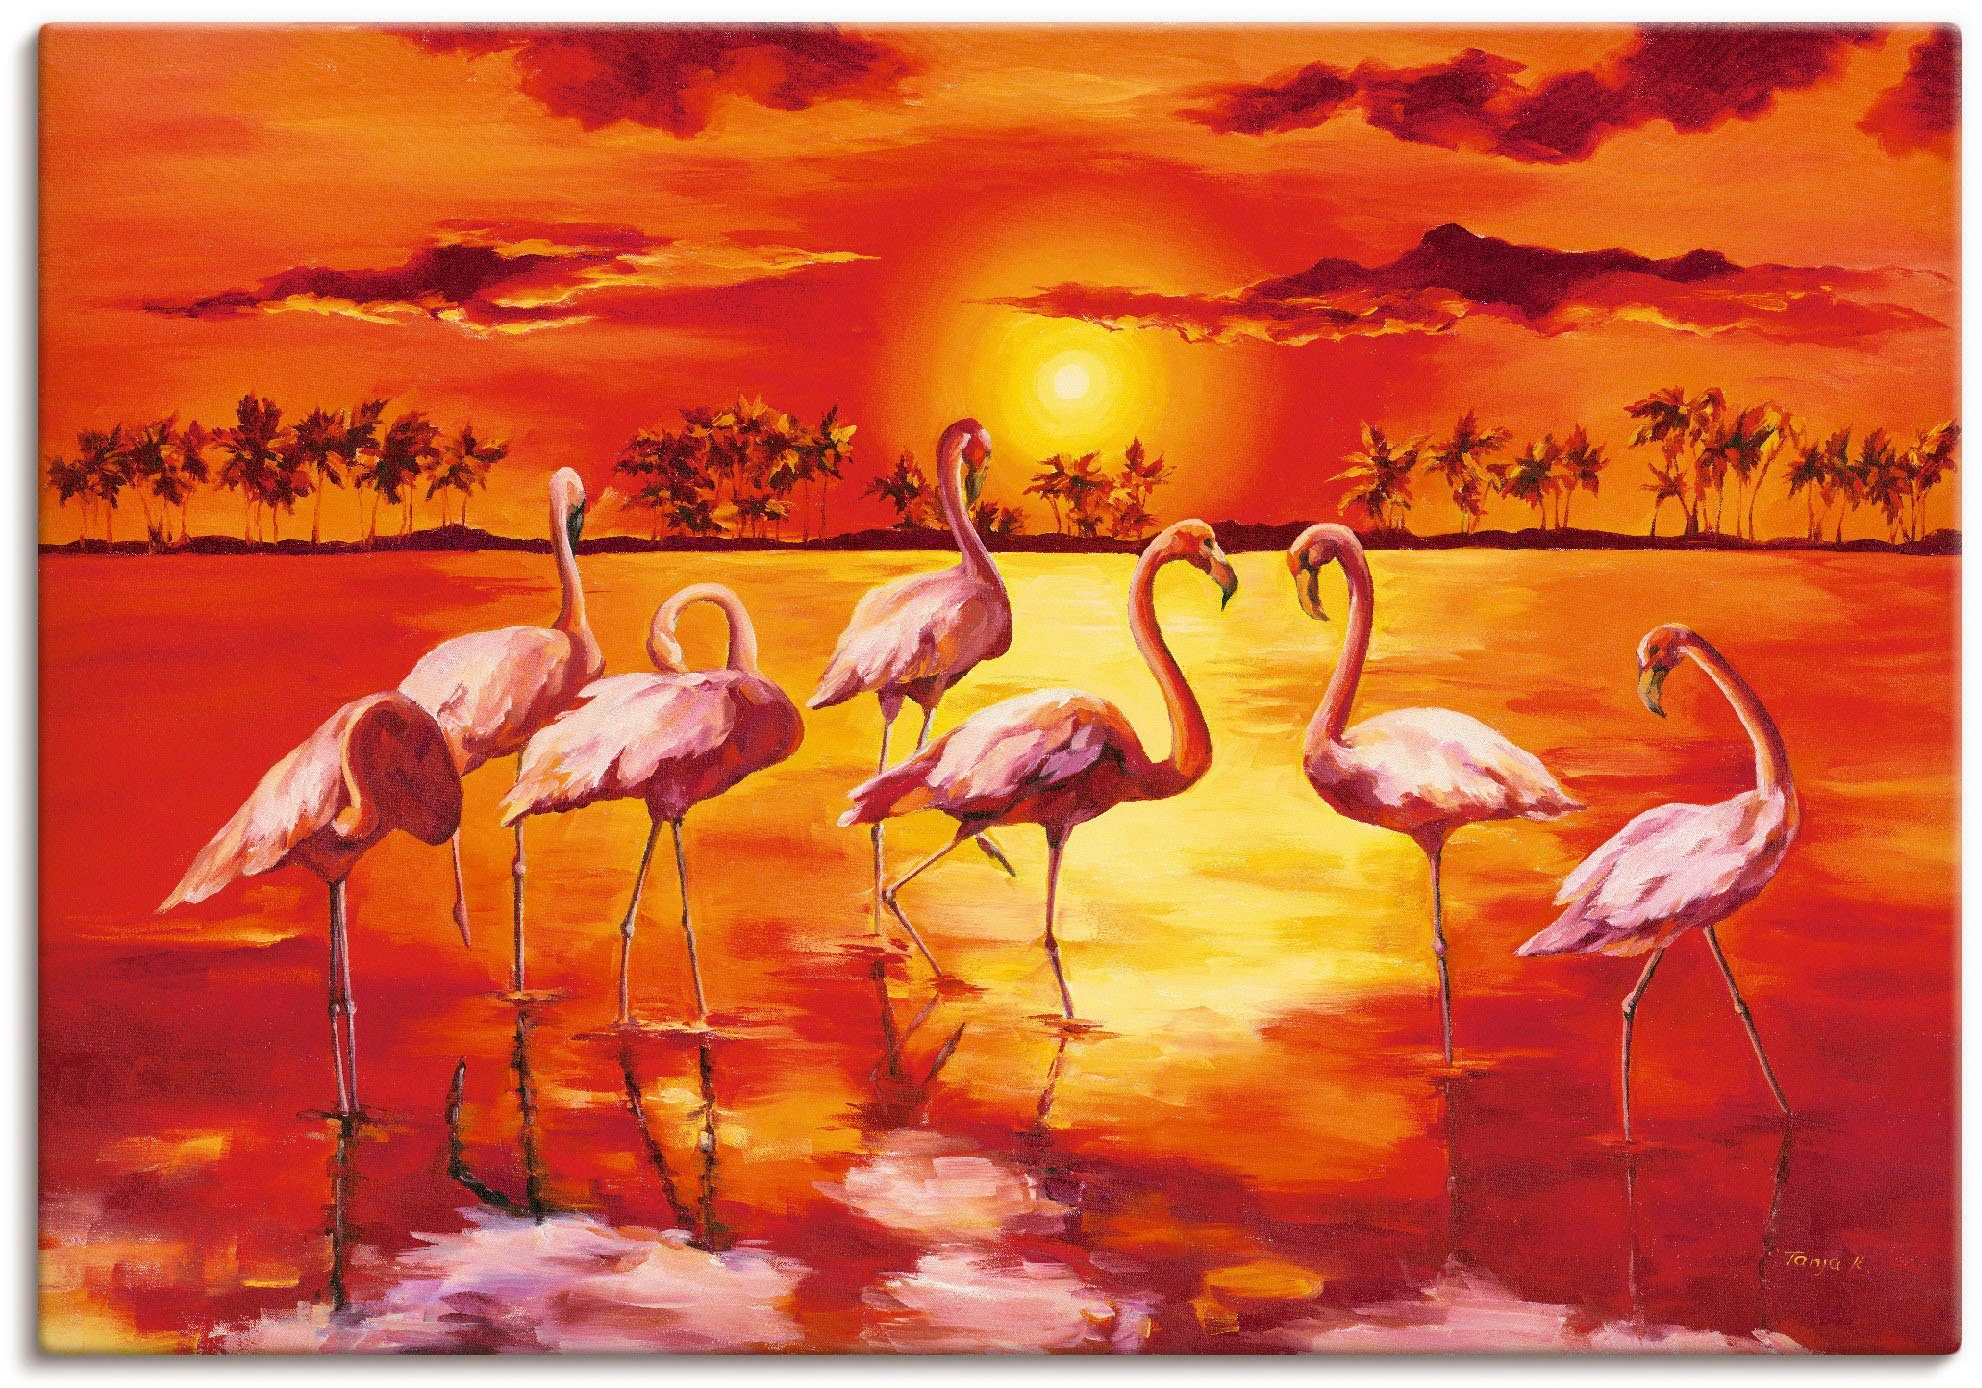 Artland Artprint Flamingo's in vele afmetingen & productsoorten - artprint van aluminium / artprint voor buiten, artprint op linnen, poster, muursticker / wandfolie ook geschikt vo